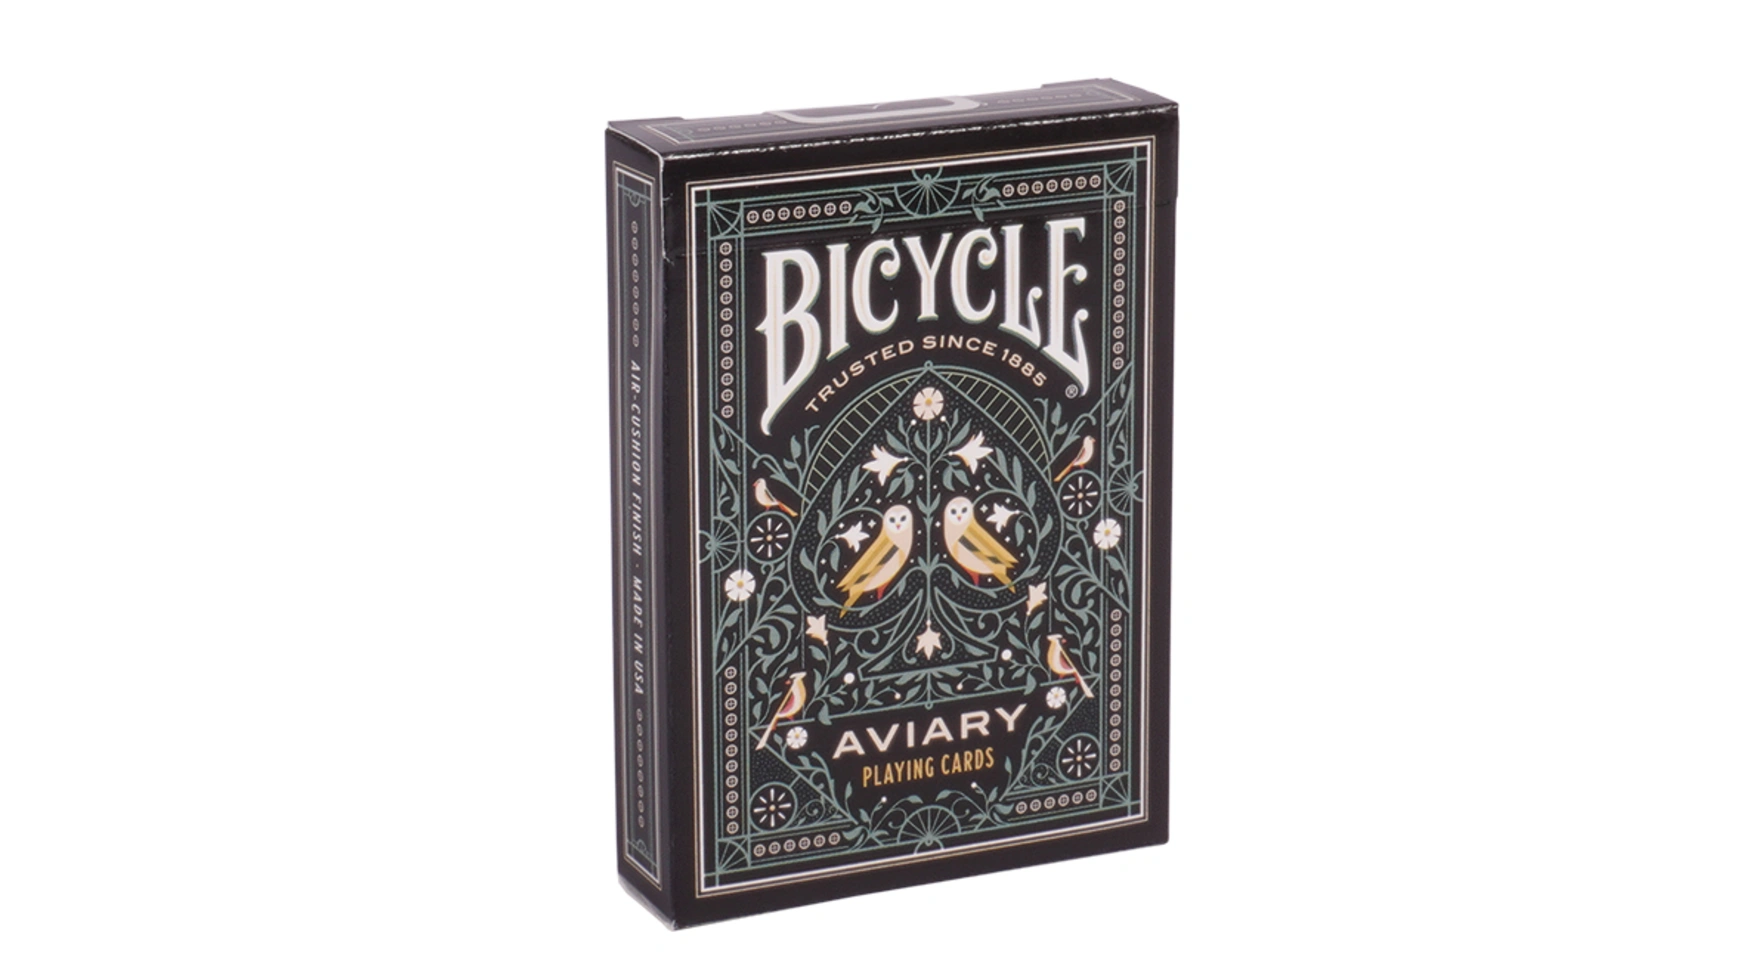 Bicycle Вольер, игральные карты bicycle карты bicycle arch angels